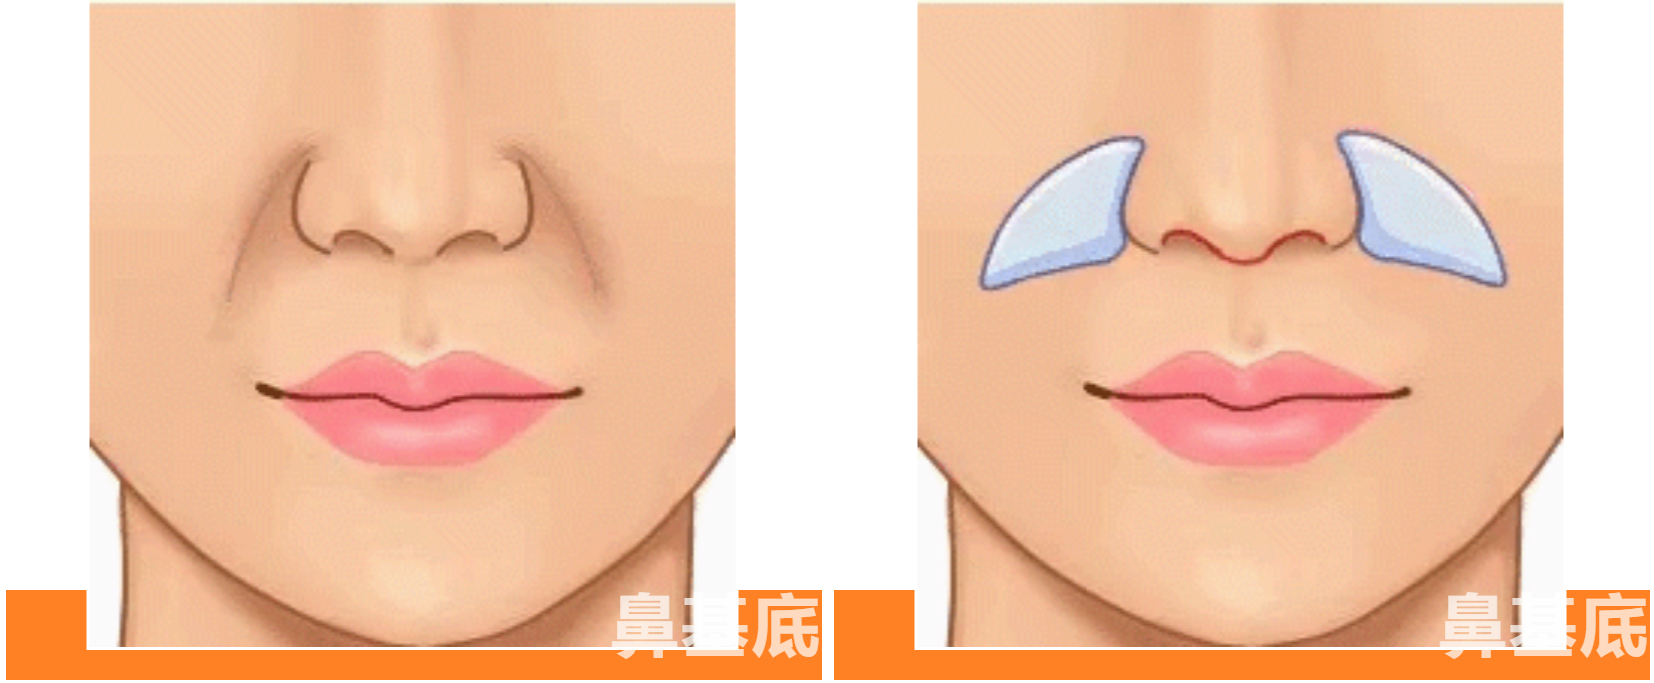 鼻基底凹陷有多吃亏?